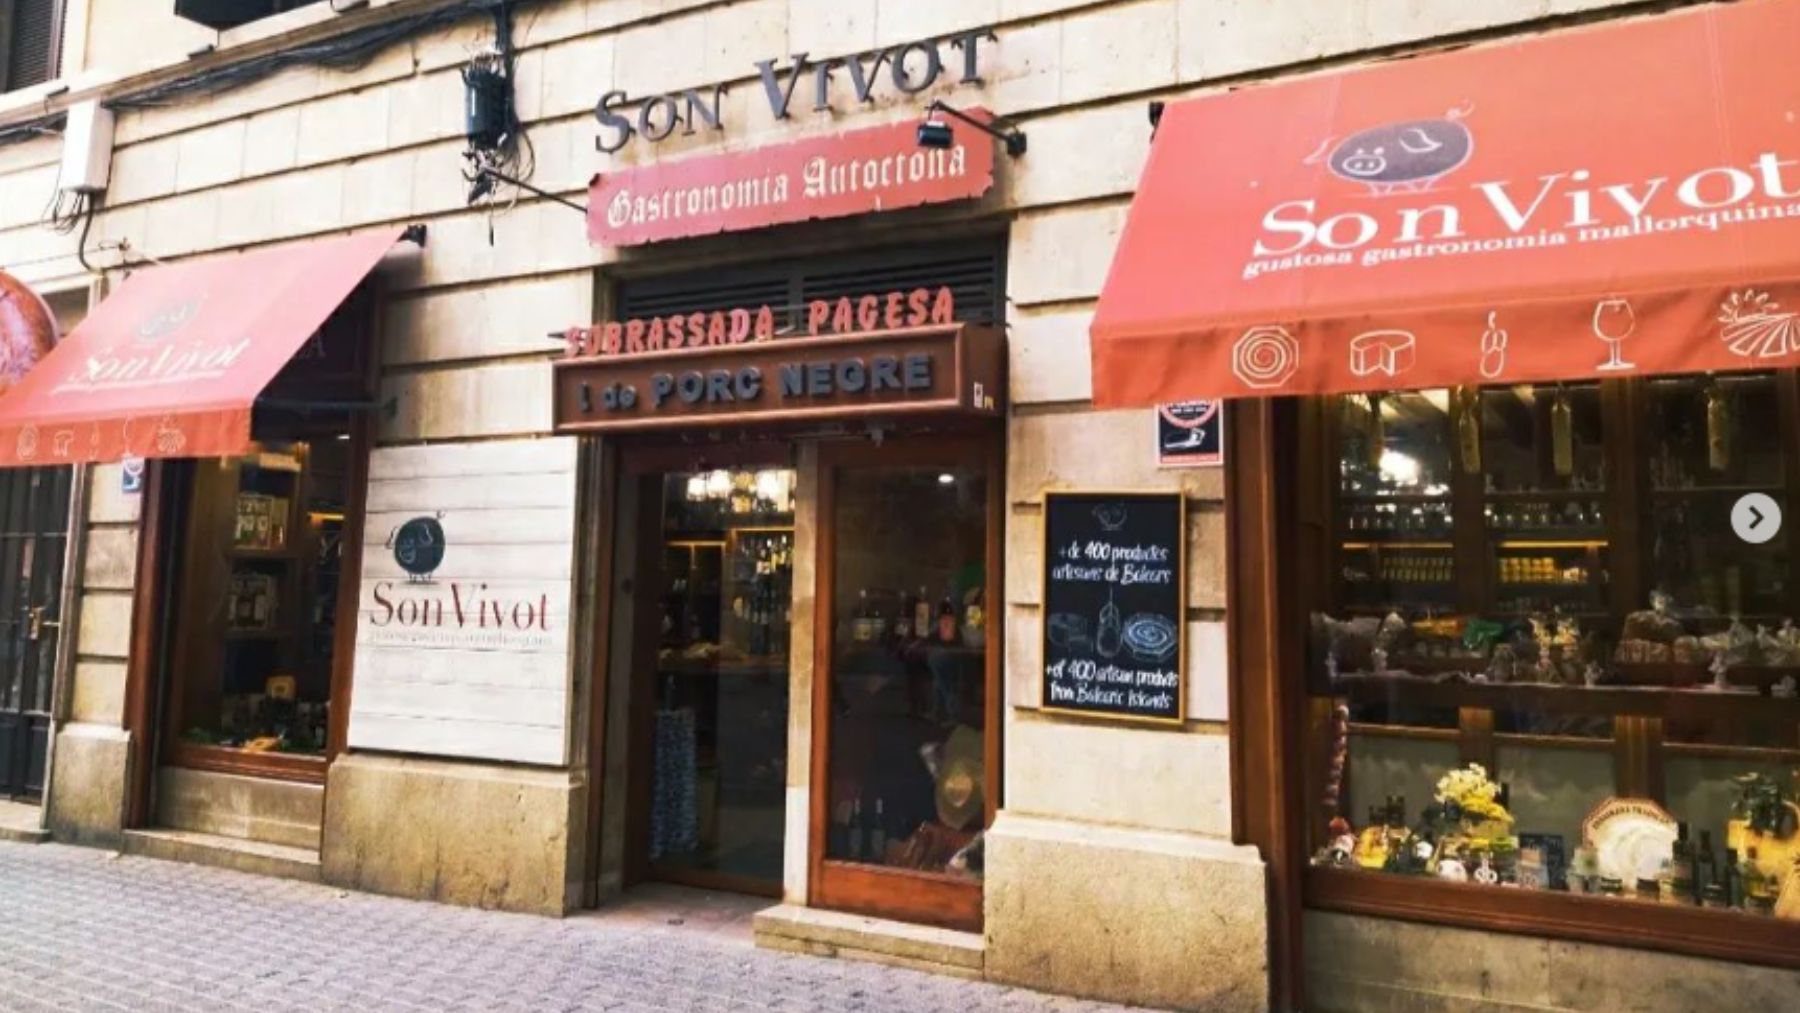 La tienda de gastronomía mallorquina Son Vivot.